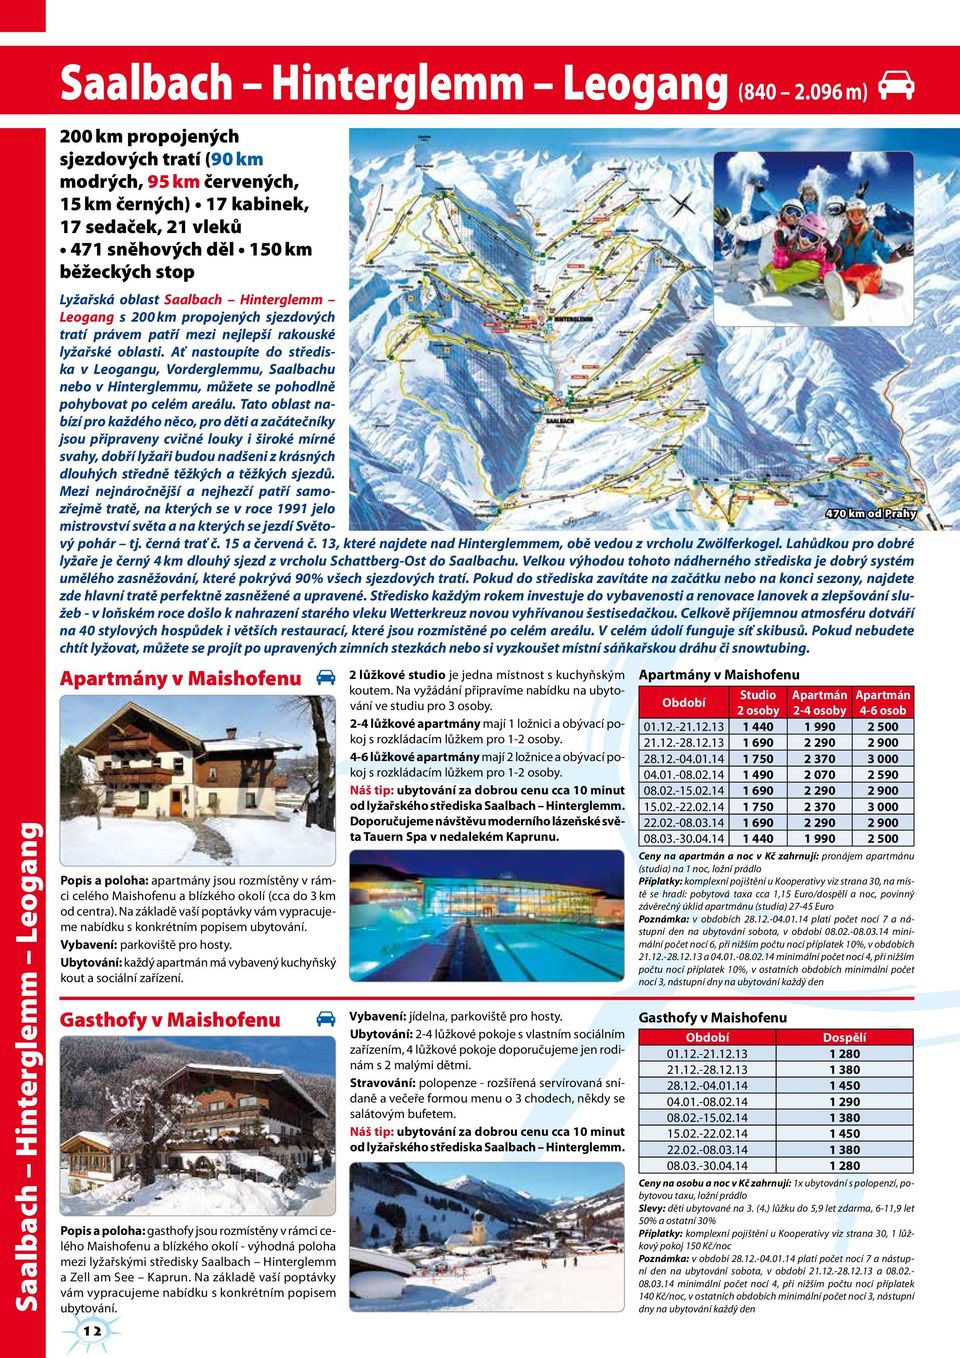 Hinterglemm Leogang s 200 km propojených sjezdových tratí právem patří mezi nejlepší rakouské lyžařské oblasti.